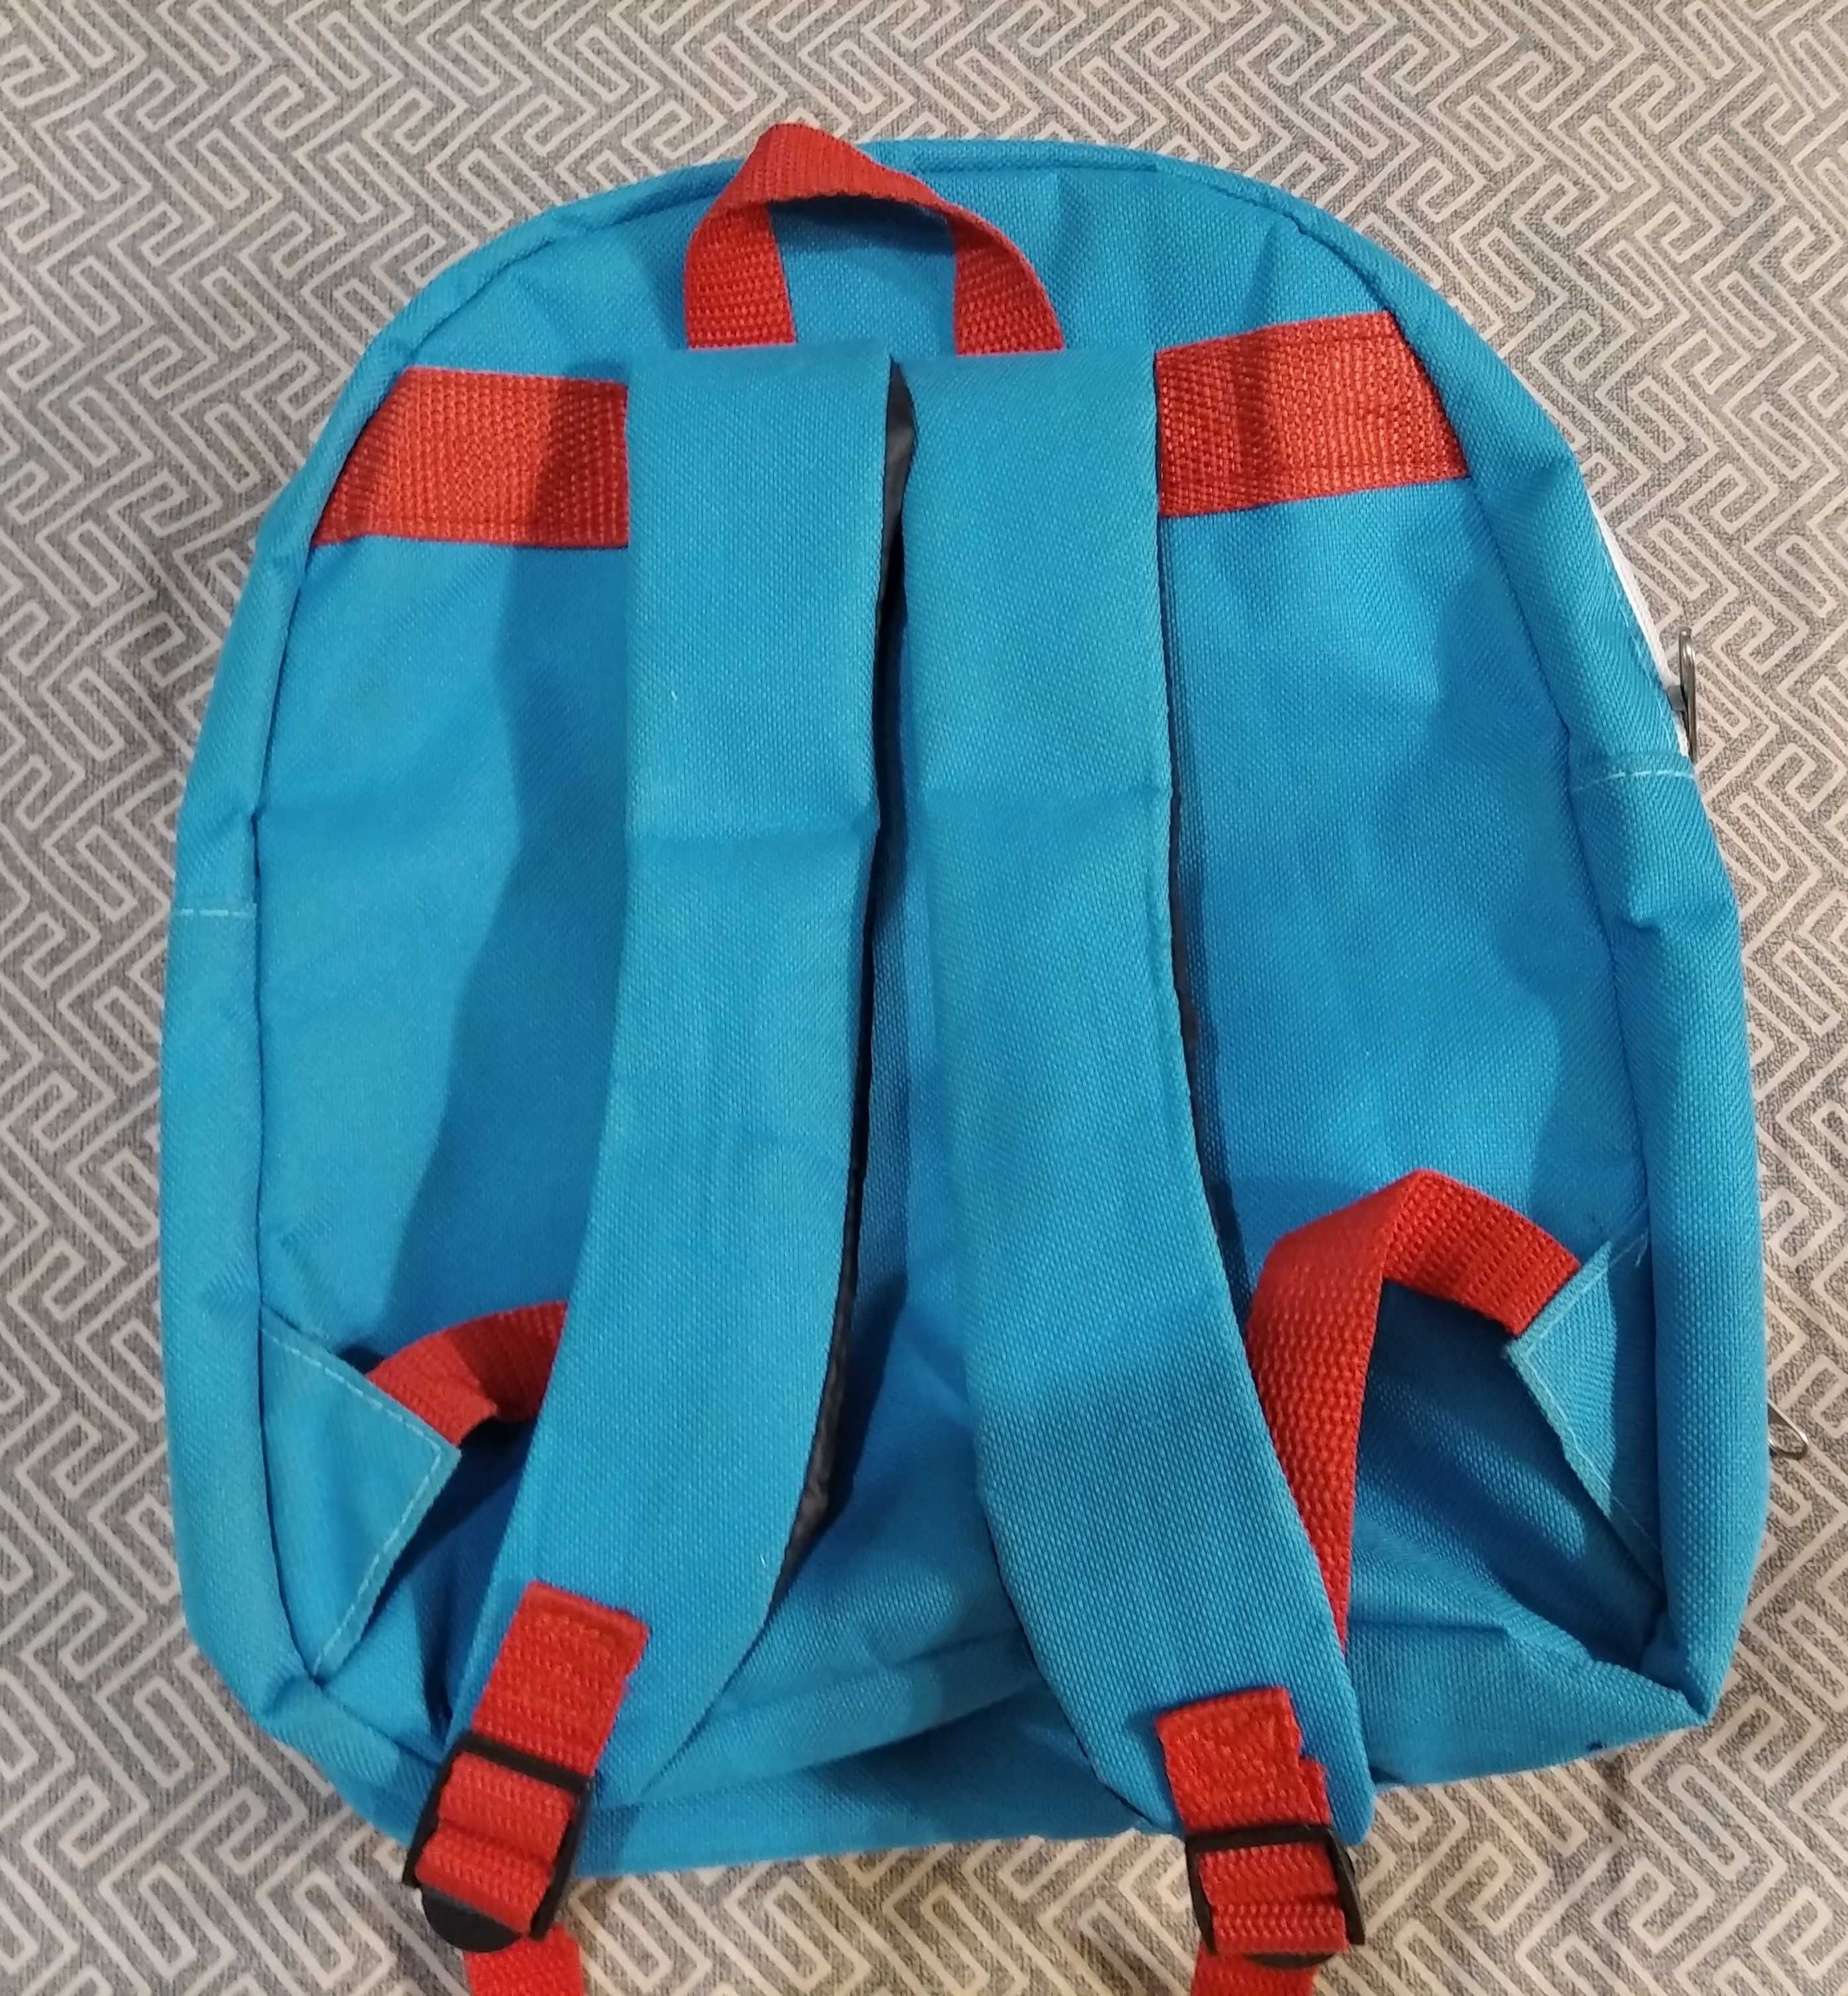 Компактный, удобный и легкий детский  рюкзак.